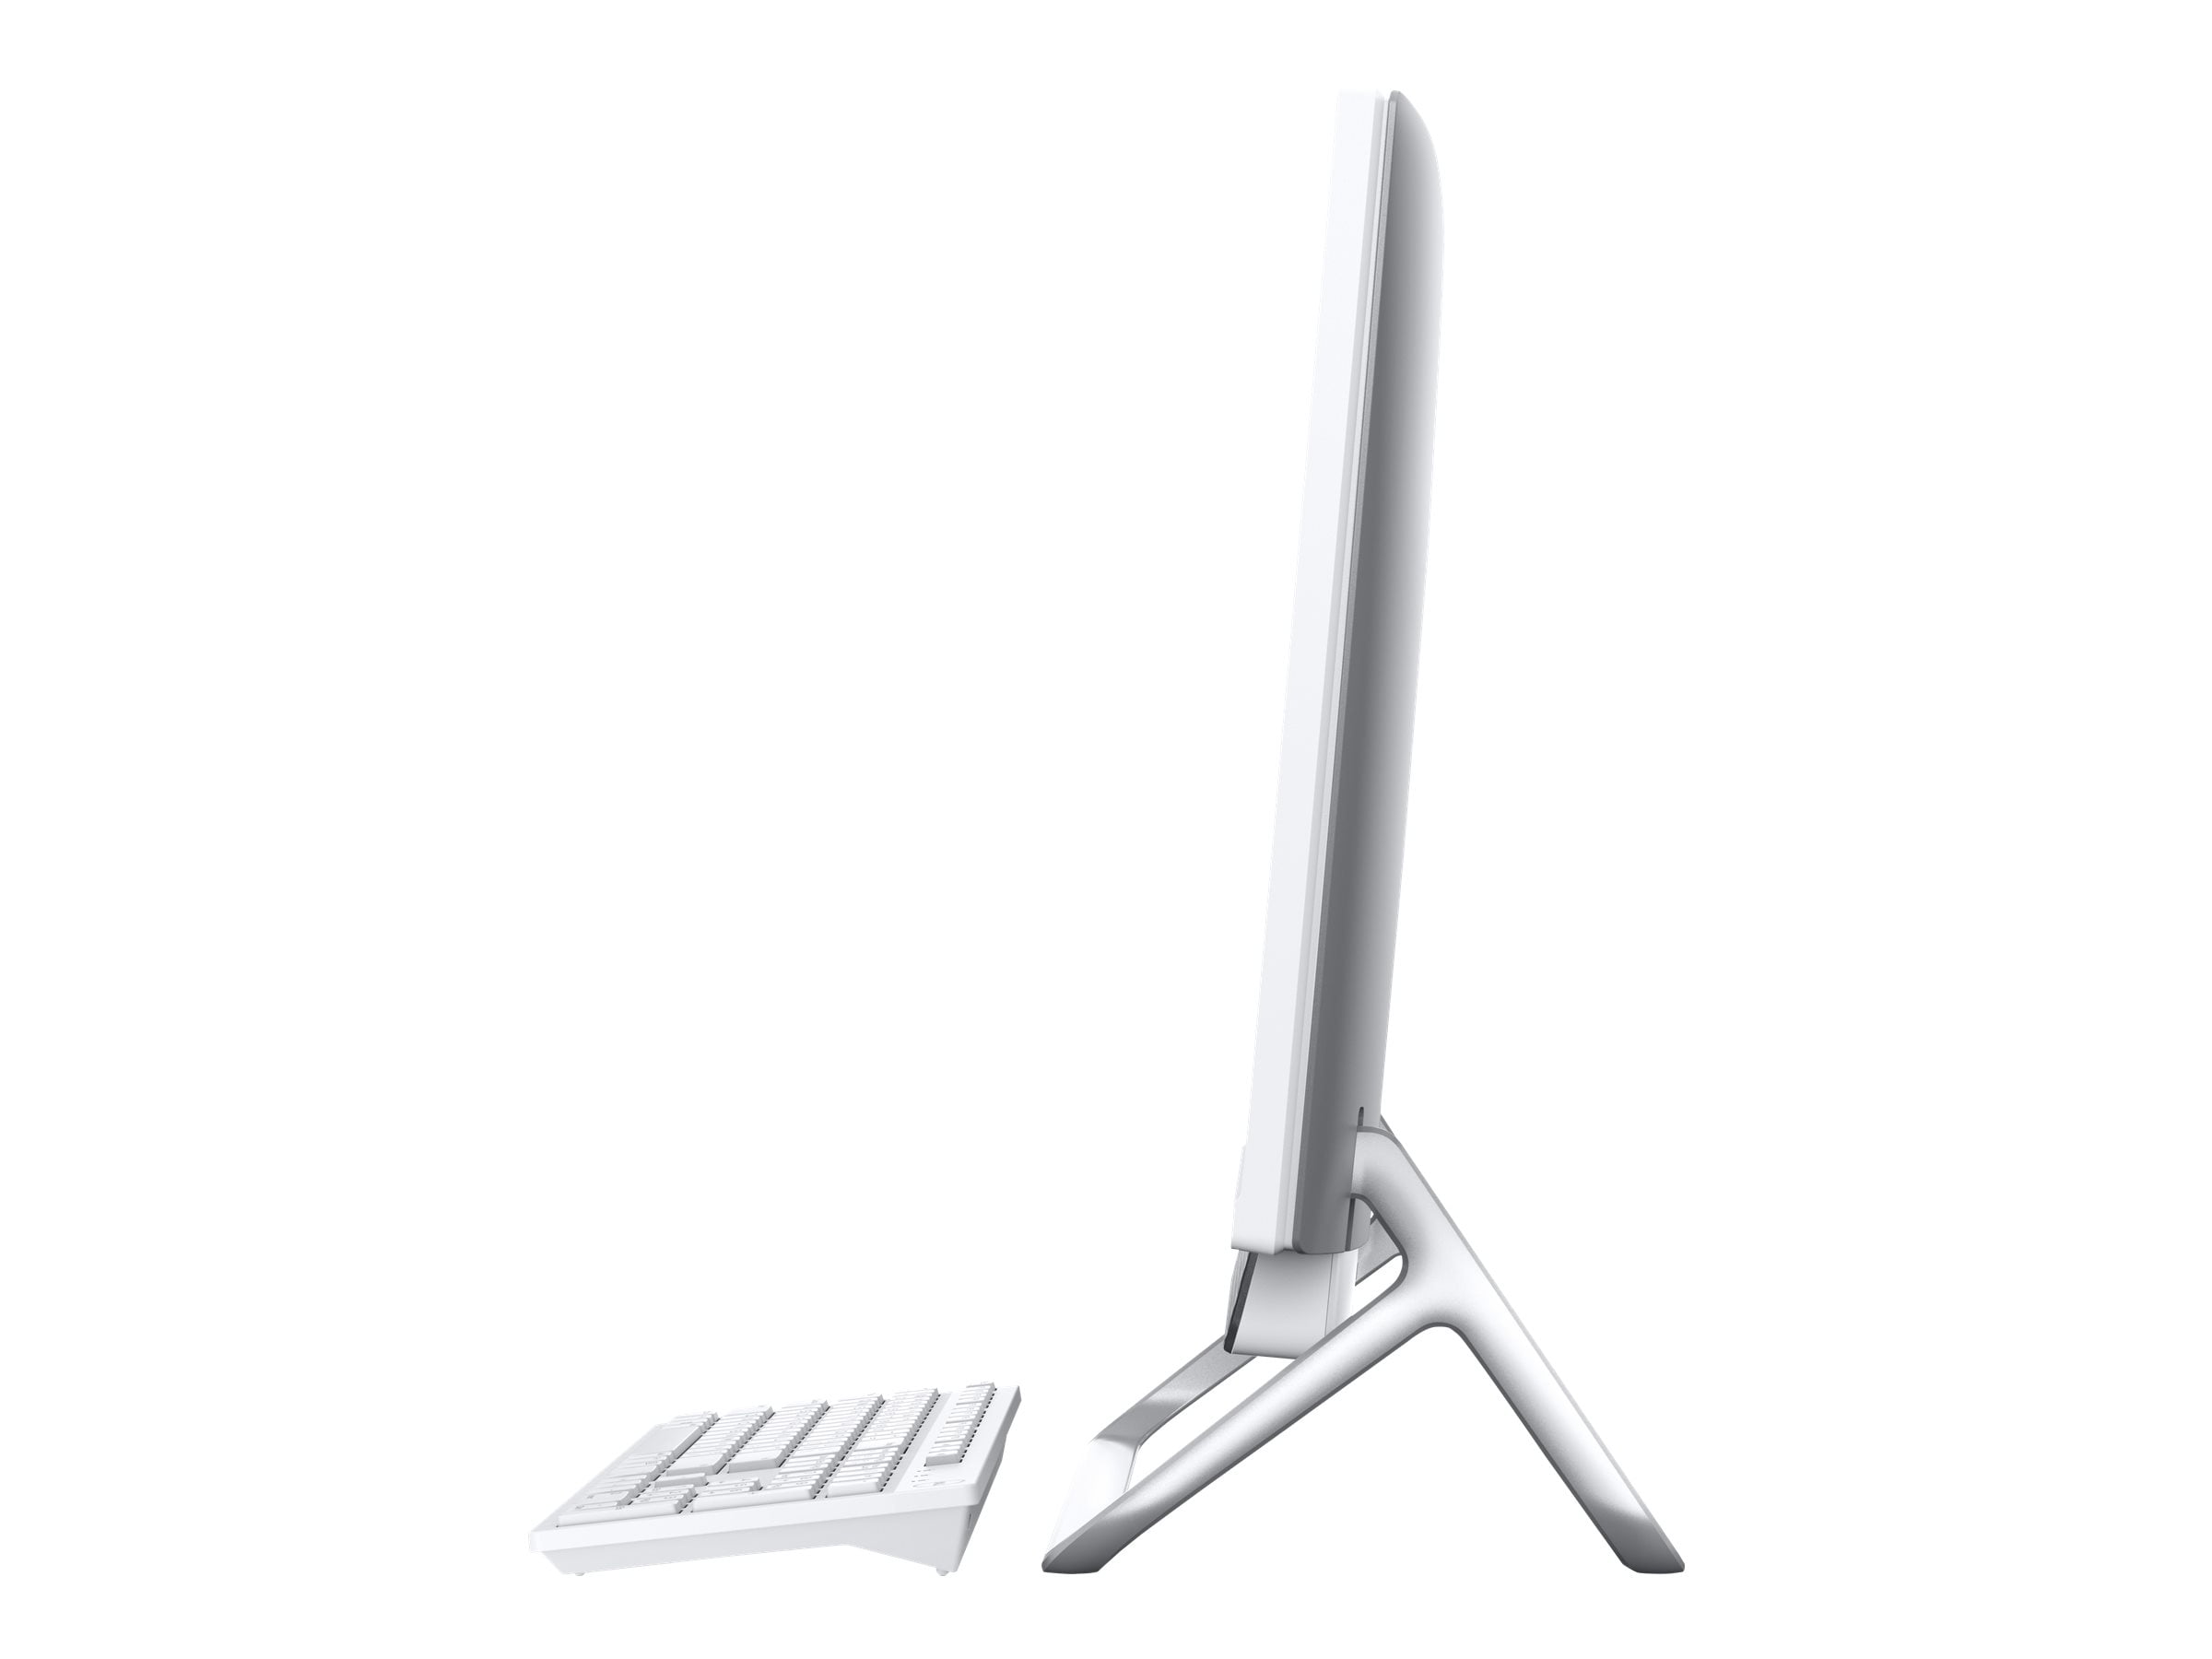 Dell Inspiron 5490 All-In-One (AIO) Desktop, 23.8